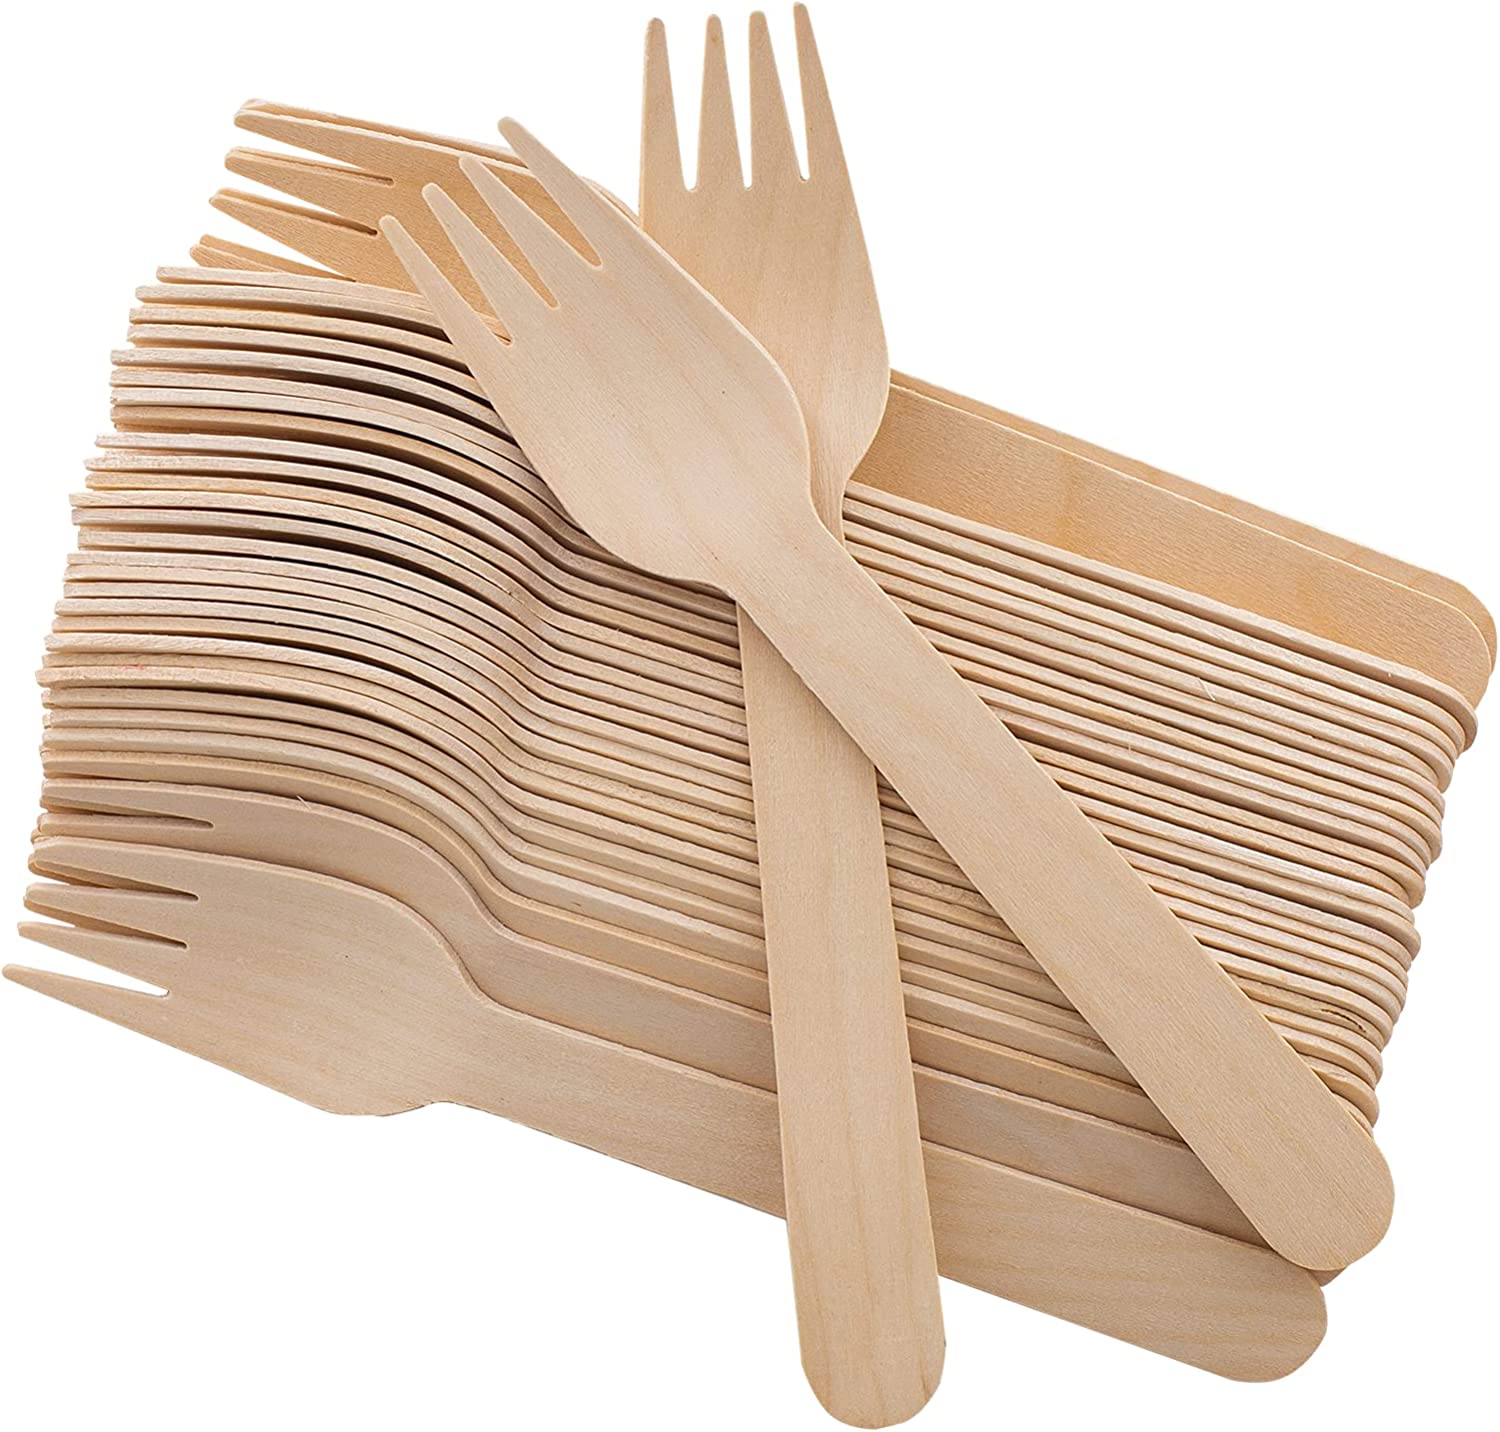 Disposable Wooden Forks -Pack of 100 Natural Wooden Utensils Dinner Events (Forks)